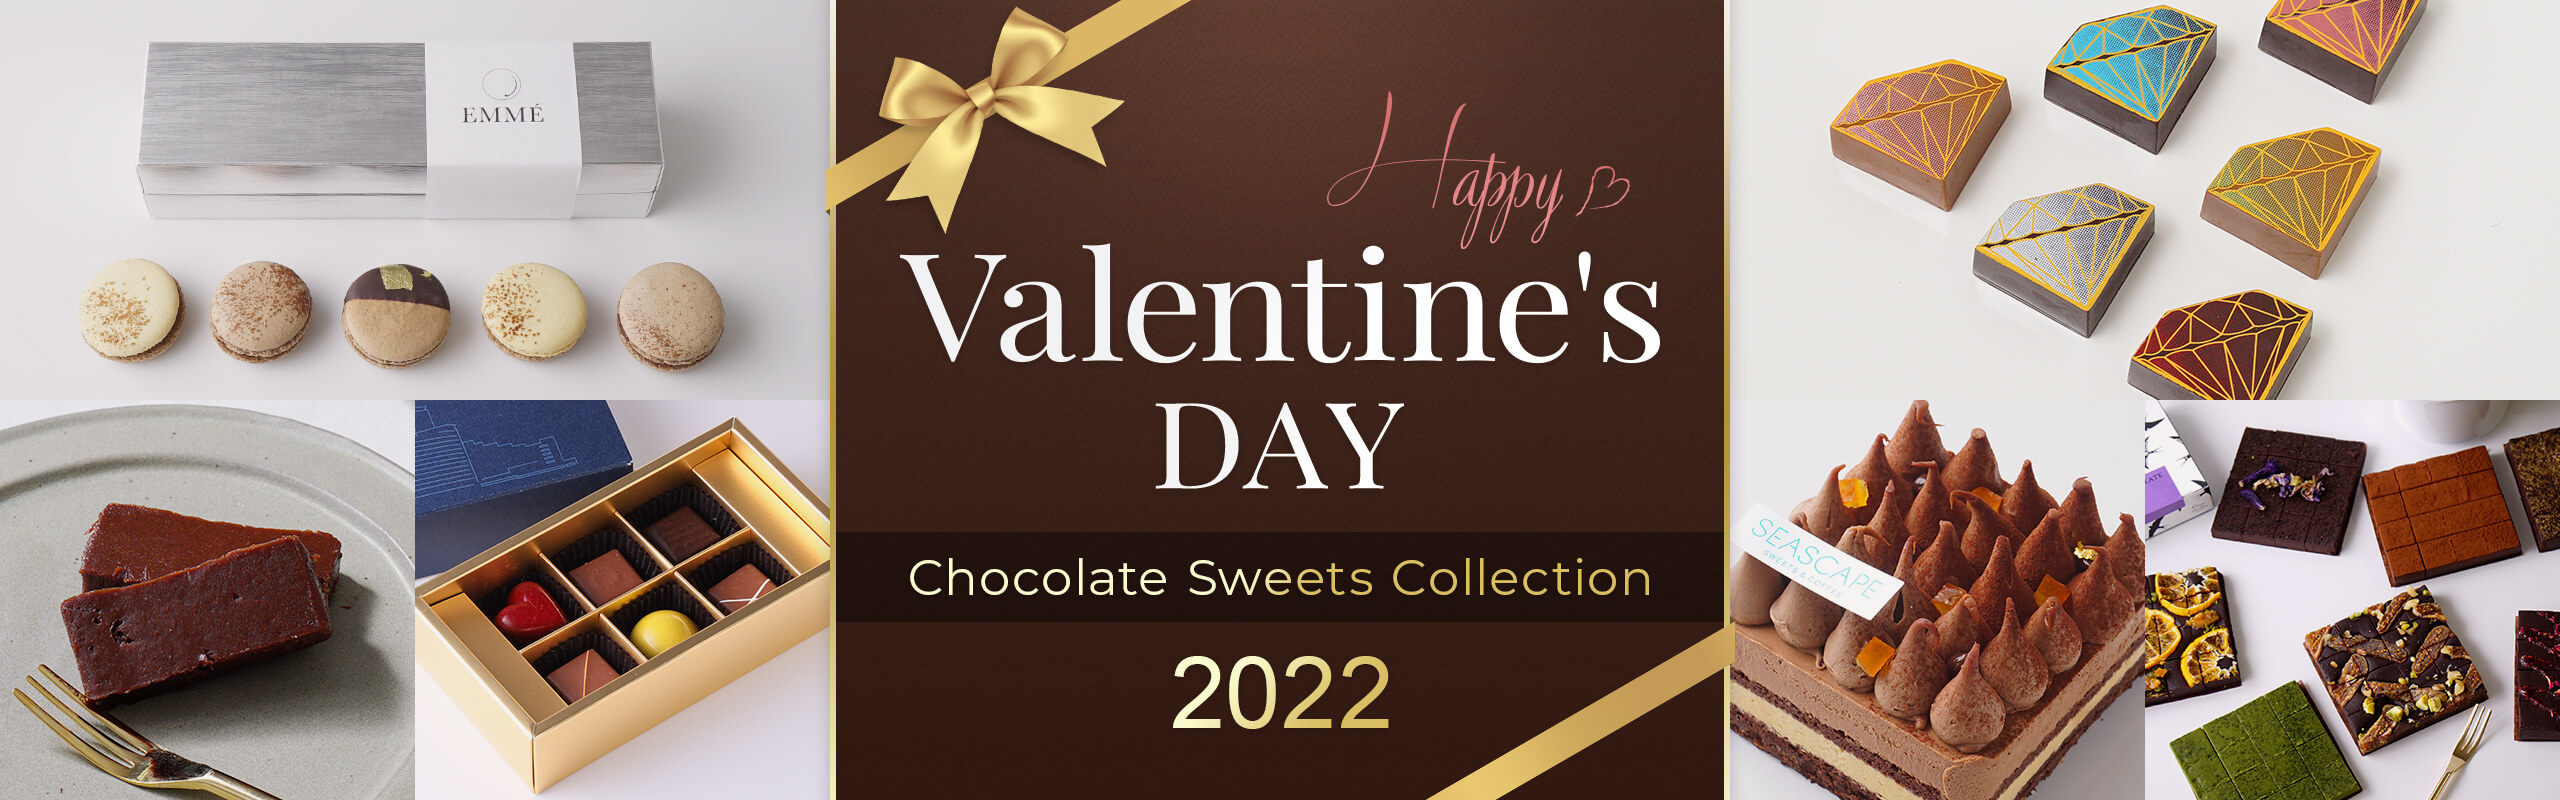 Valentine's DAY 2022